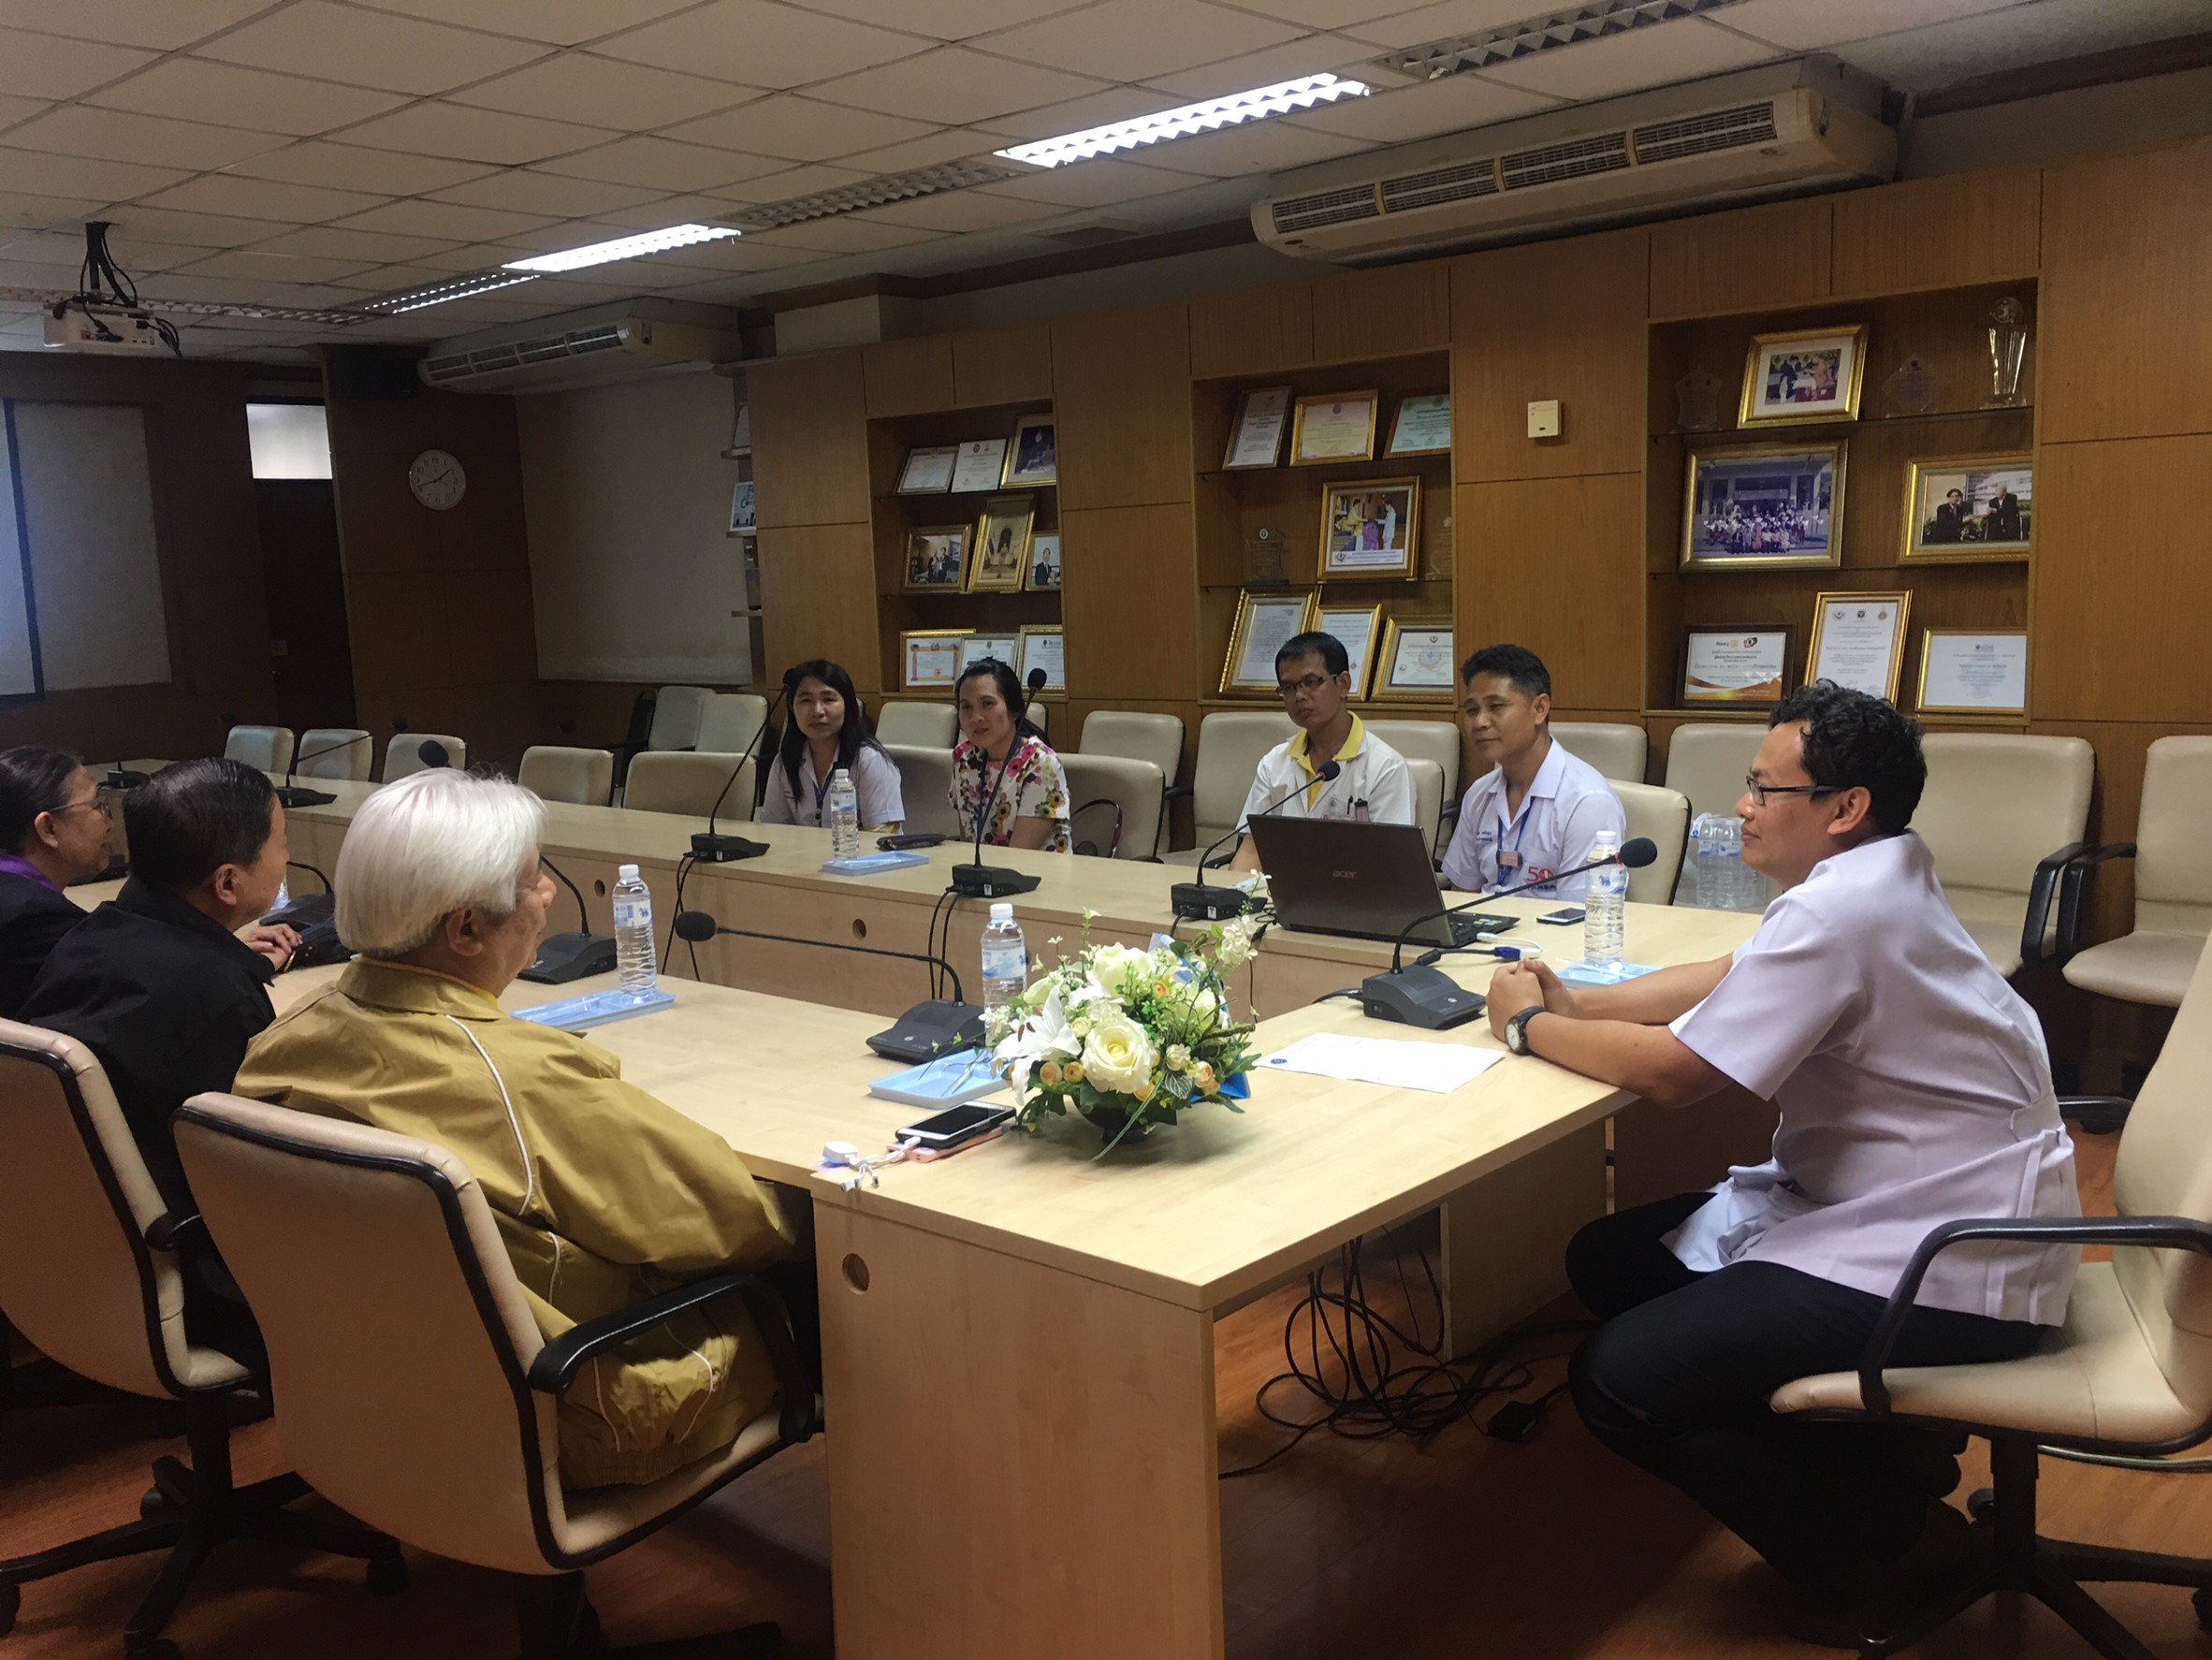 ประชุมวิชาการร่วมกับรังสีการแพทย์แห่งประเทศไทย ครั้งที่17 27-29 พ.ย. - พร้อมเข้าเยี่ยมและให้กำลังใจหน่วยงานรังสีวิทยาในพื้นที่จังหวัดอุบลราชธานีระหว่างวันที่ 25-26 พฤศจิกายน 2562 29